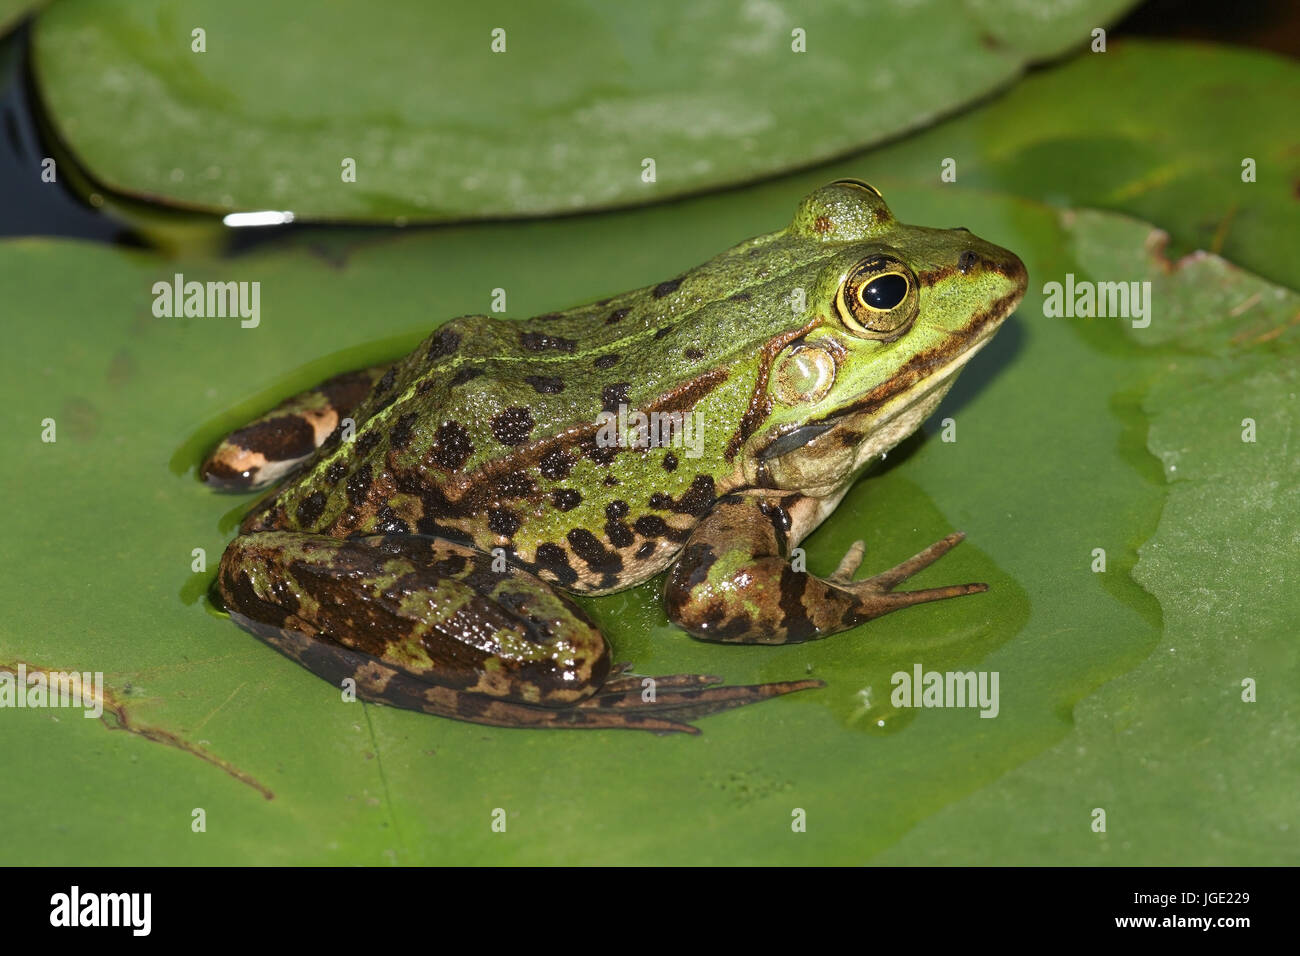 Teich Frosch sitzt auf Seerose Blatt, Teichfrosch Sitzt Auf Seerosenblatt  Stockfotografie - Alamy